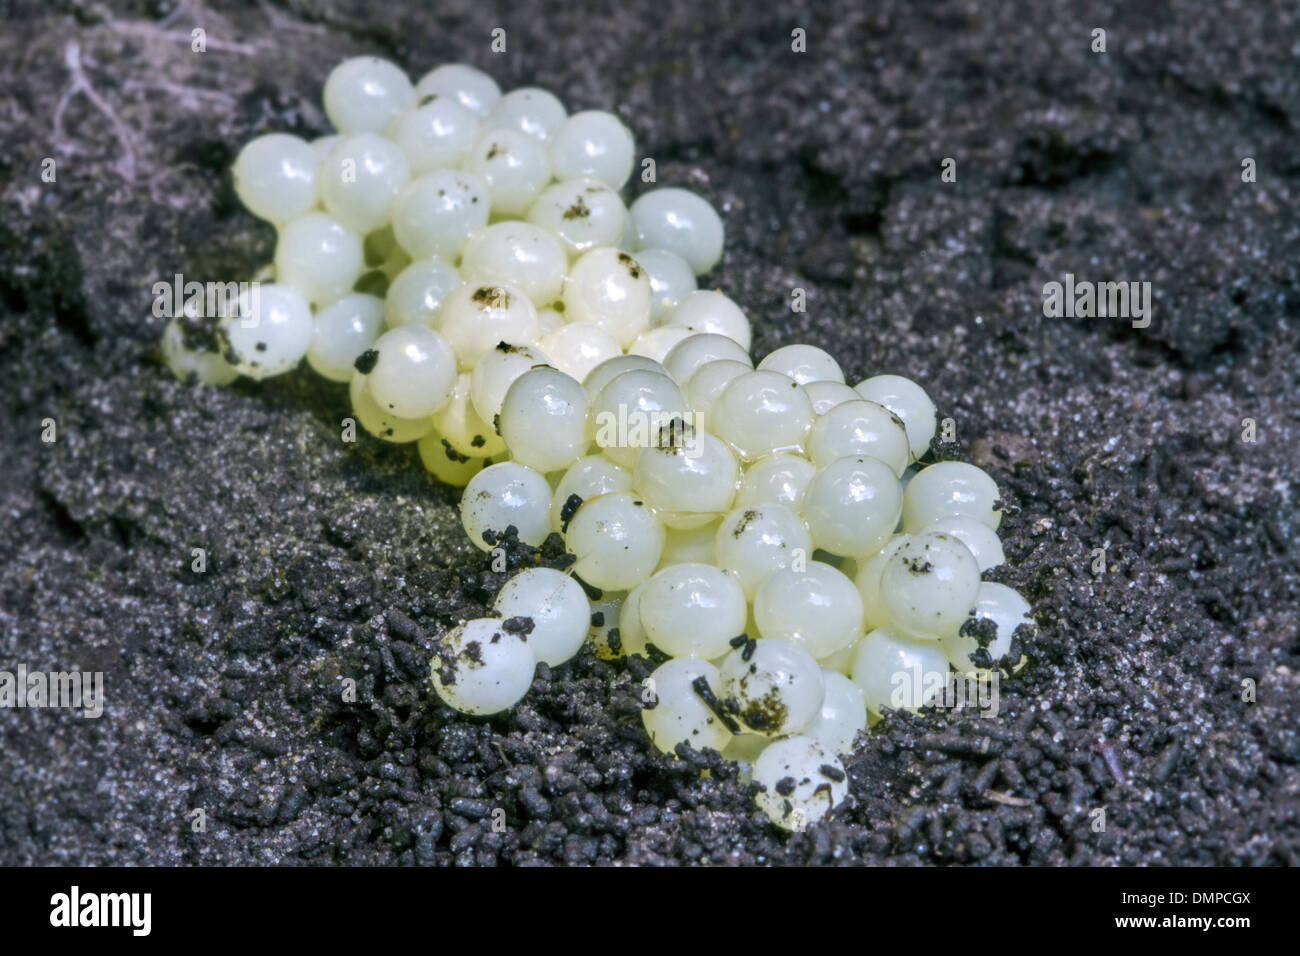 Intrico di bianco uova di lumaca sul suolo, giardino parassiti Foto Stock